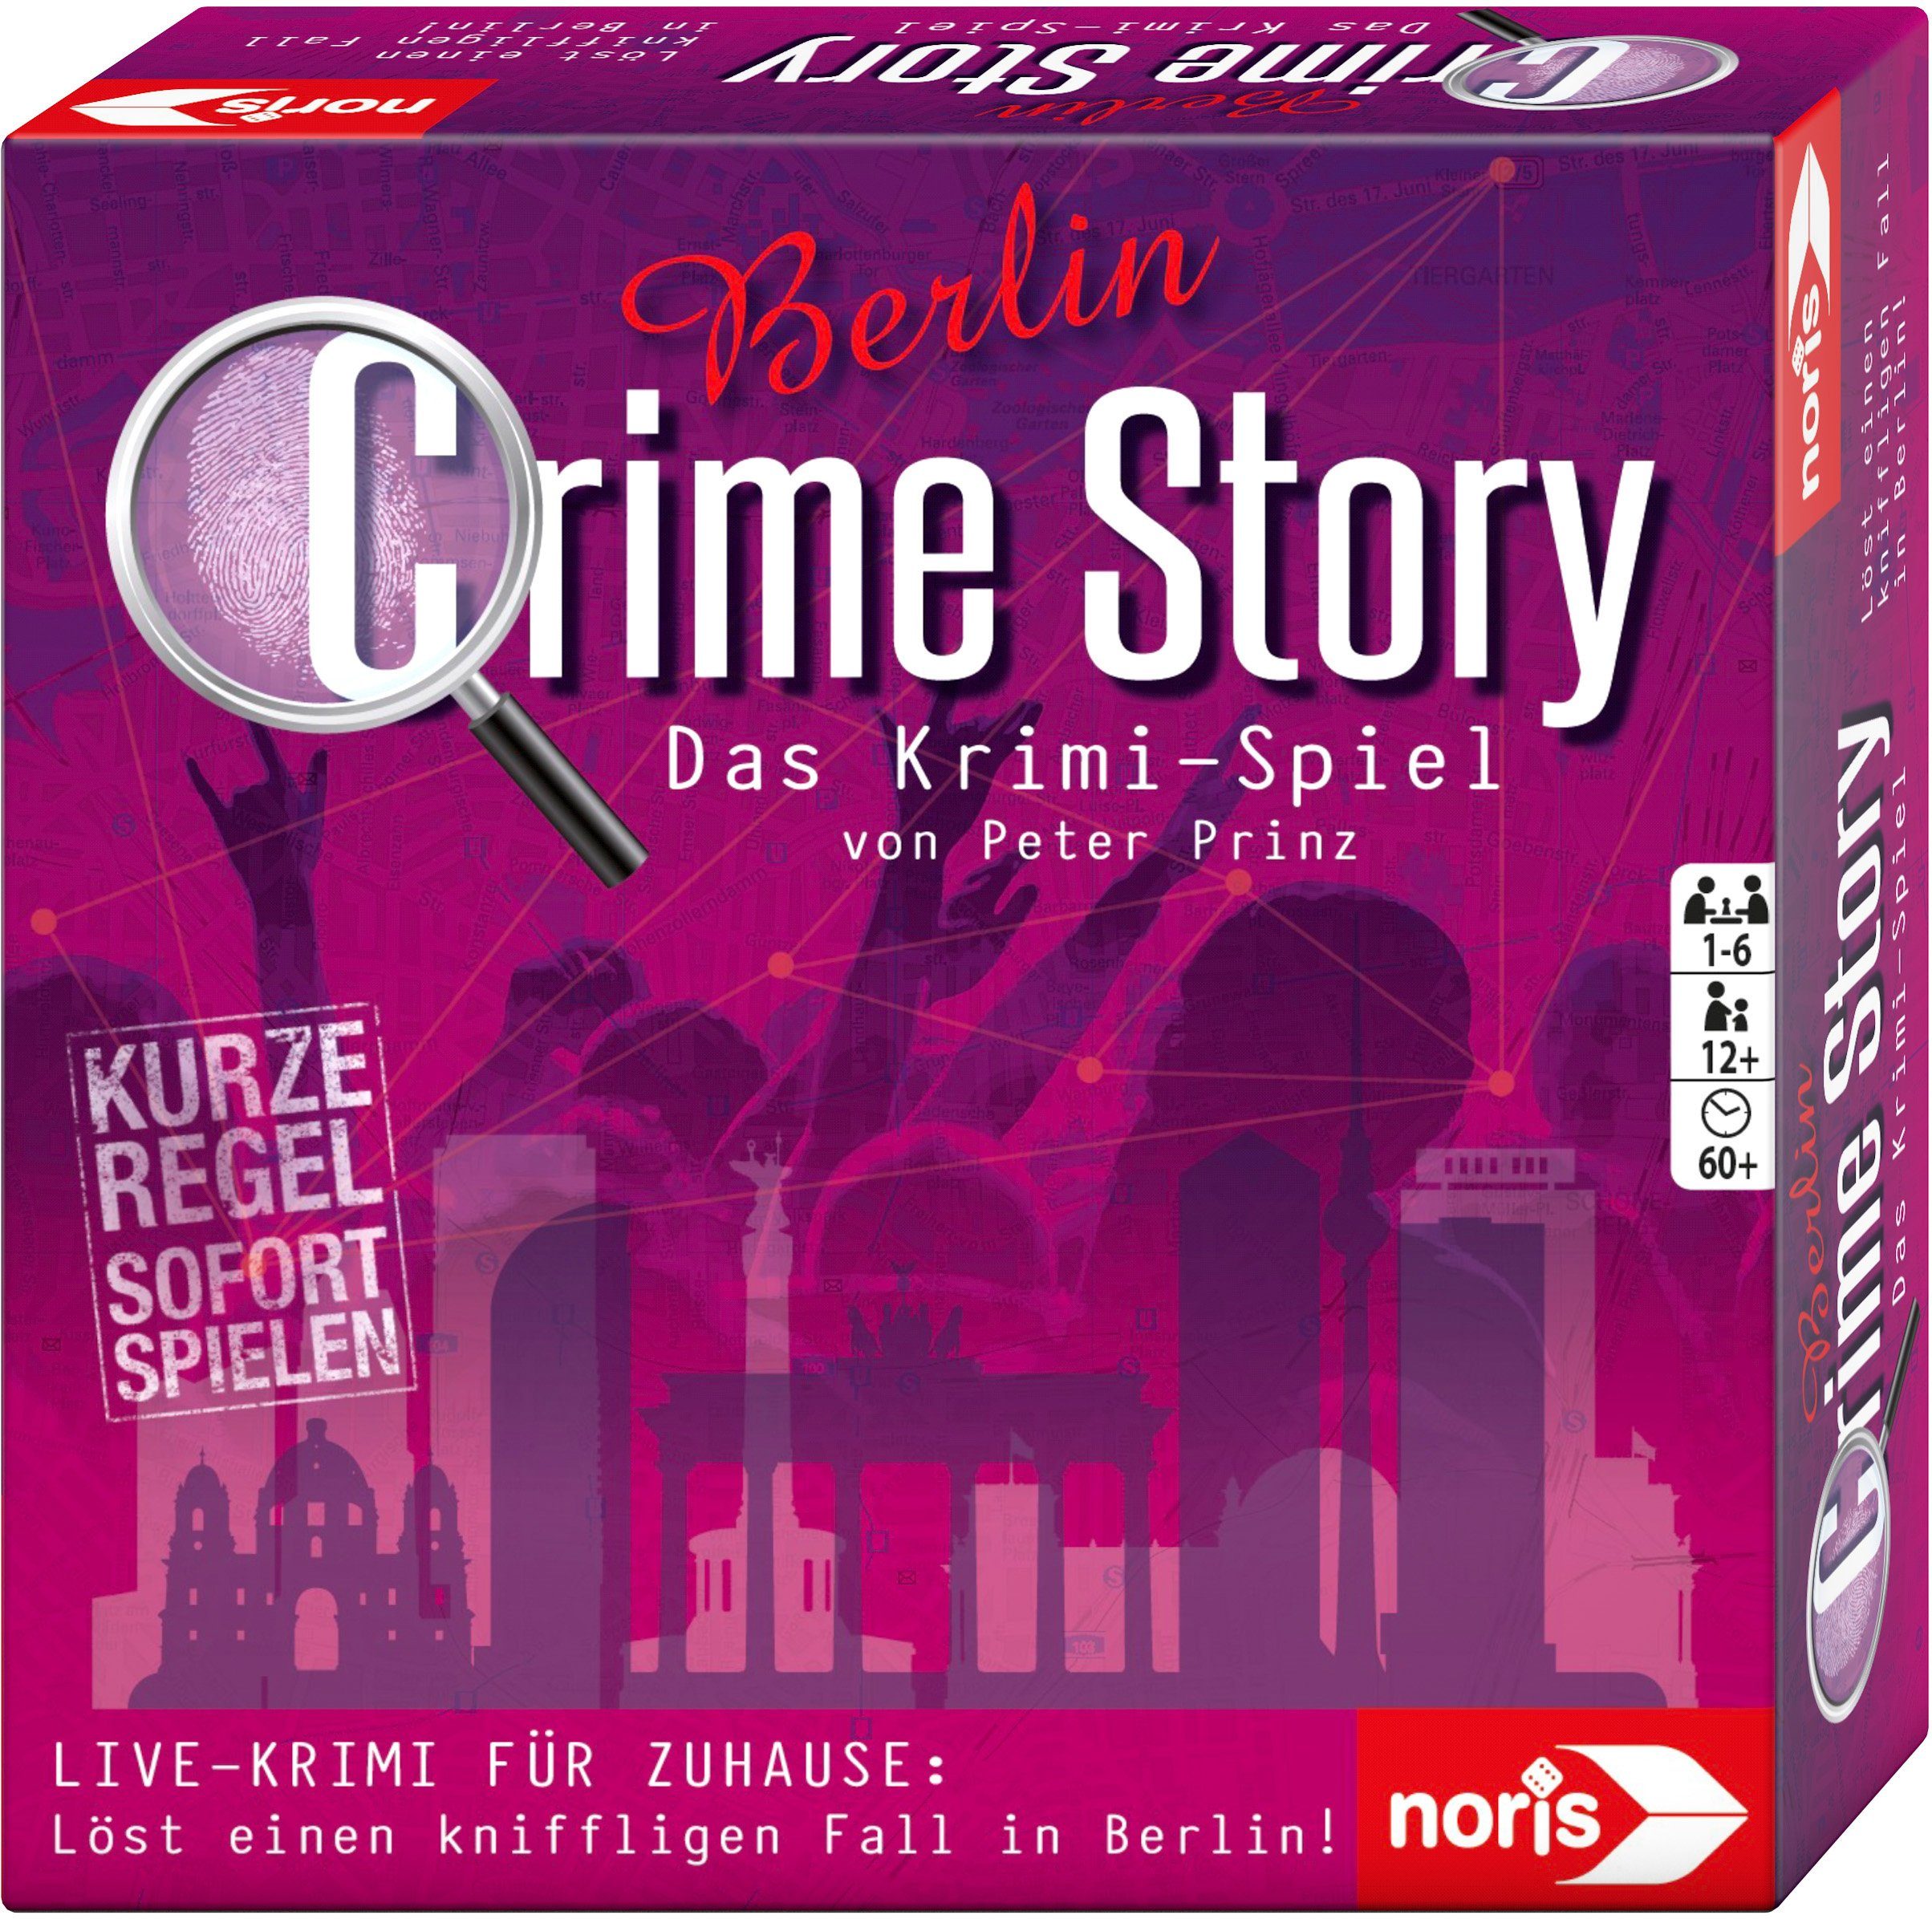 - Germany in Spiel, Crime Noris Berlin, Made Story